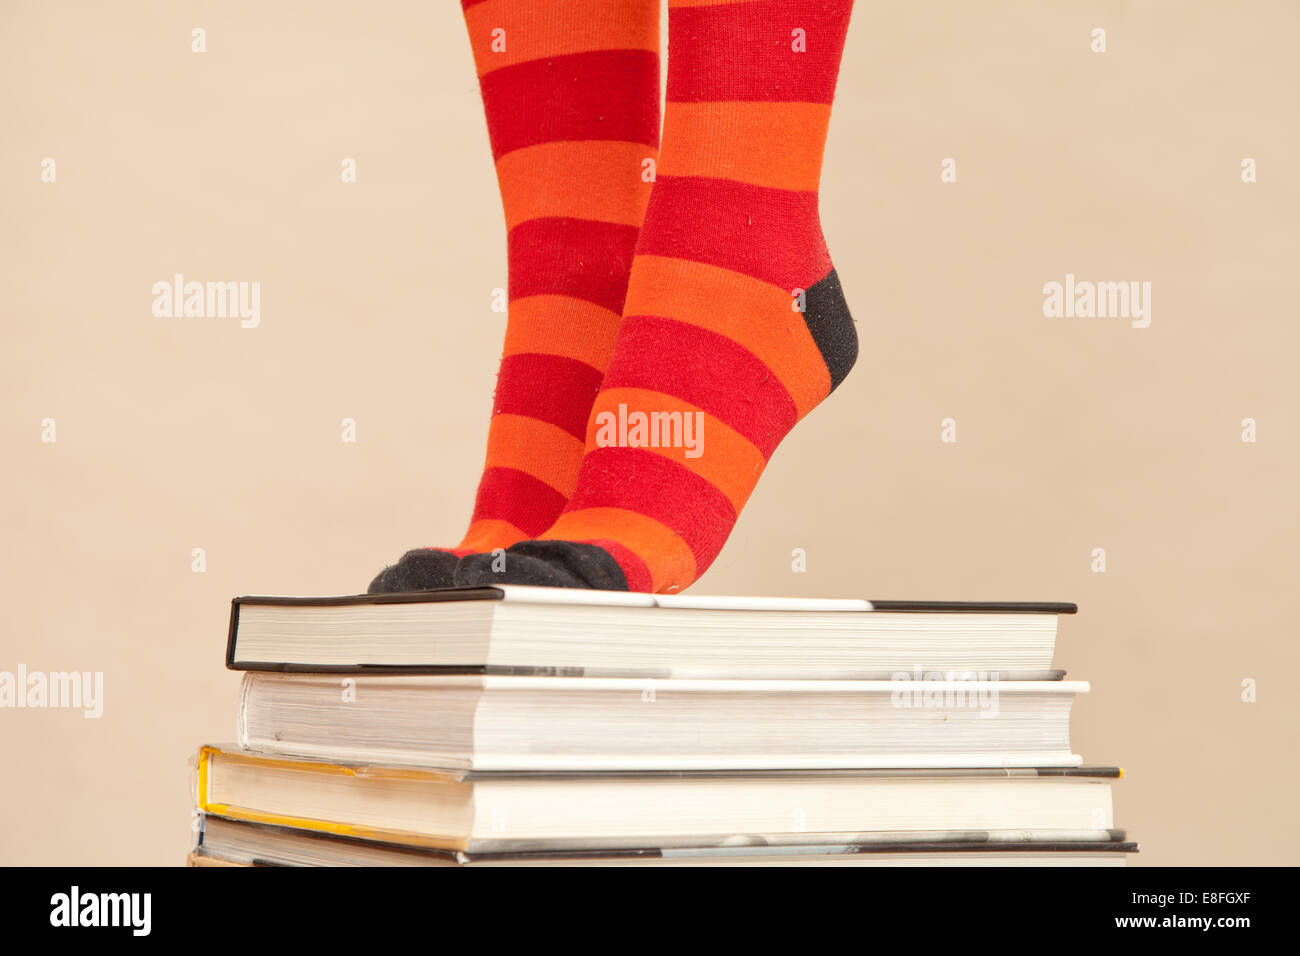 Pieds de femme en chaussettes à rayures debout sur pile de livres Banque D'Images